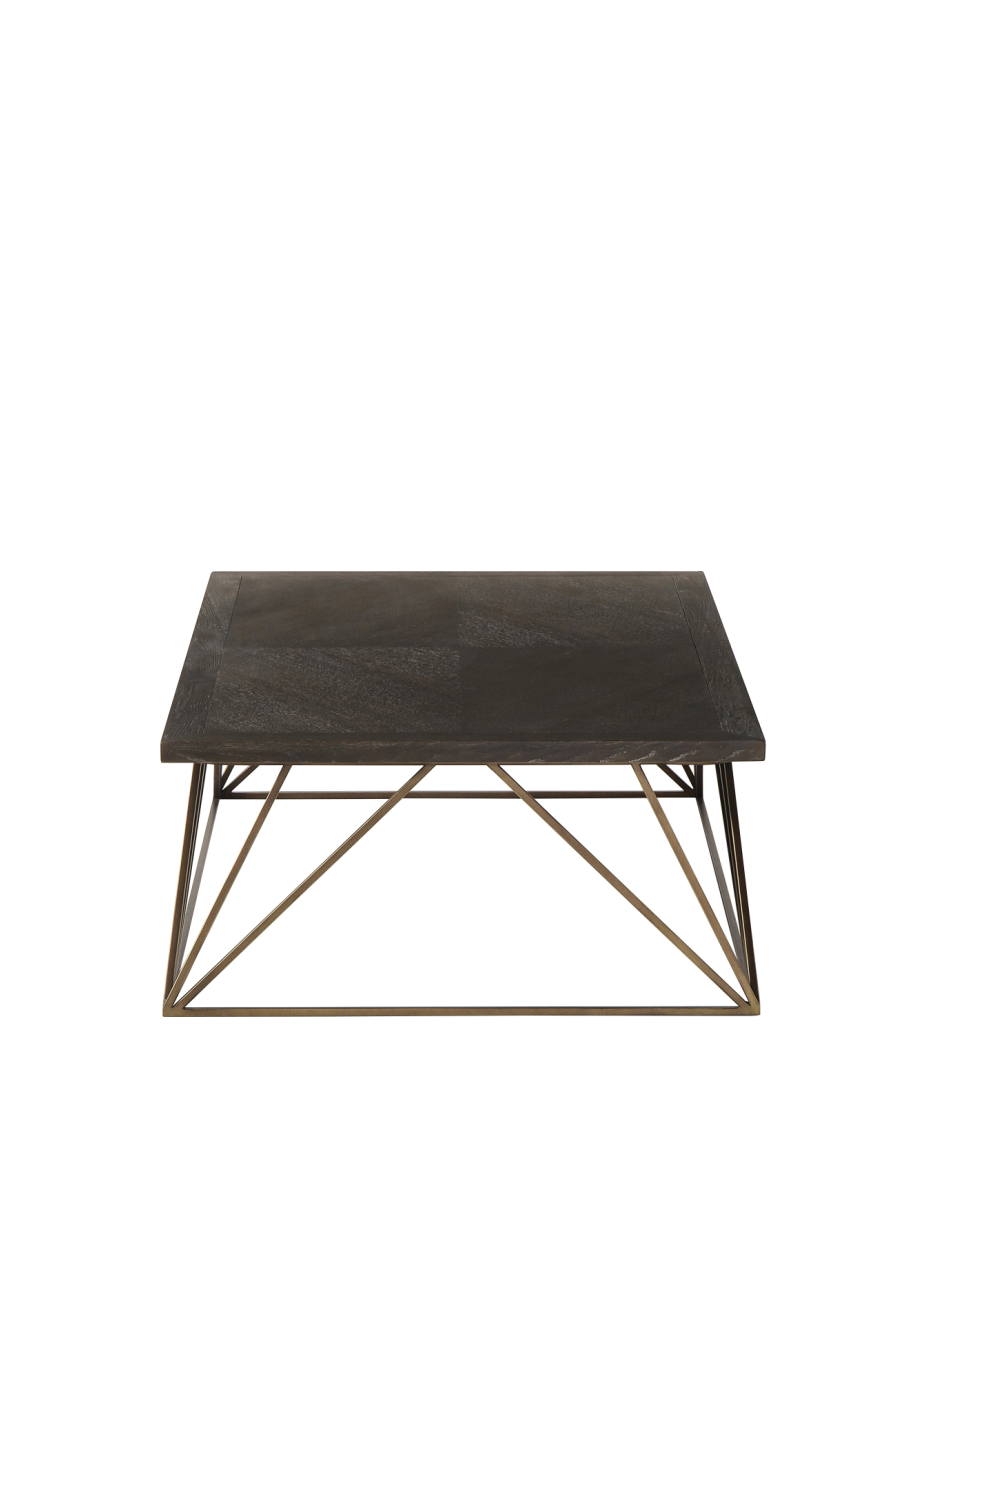 Dark Oak Geometrical Base Coffee Table | Andrew Martin Emerson | Woodfurniture.com